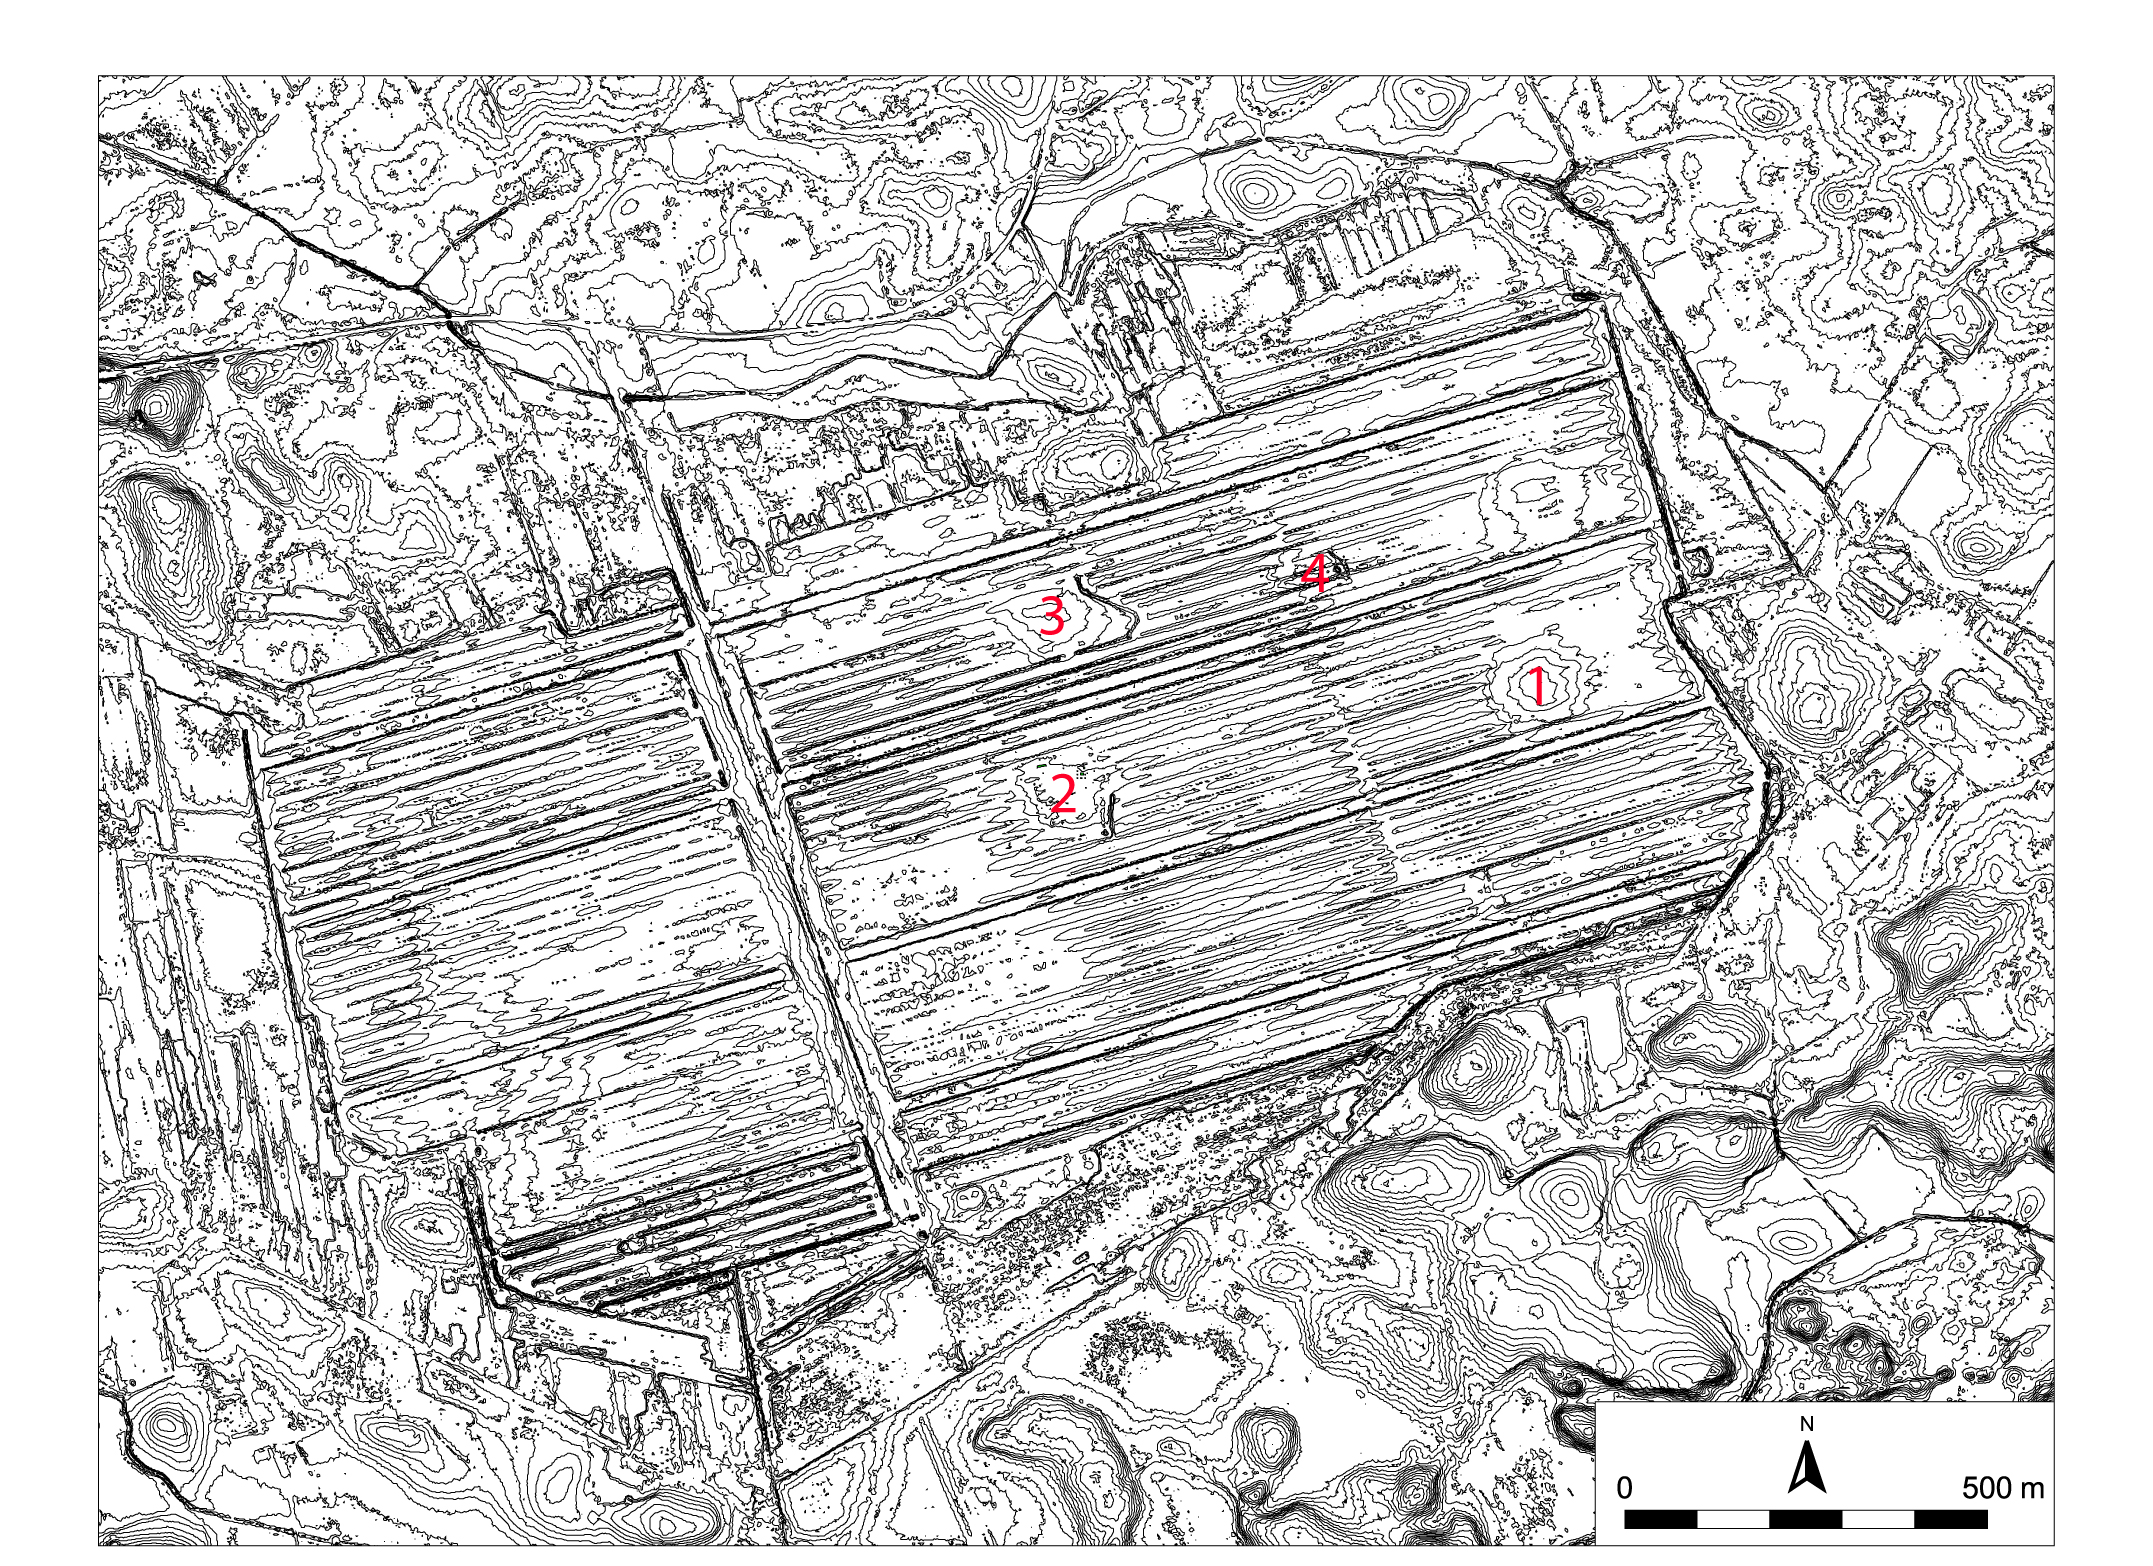 Fig. 2. Topografisk karta över torvtäkten på Viss mosse med boplatsområdena markerade. Moränhöjderna ute i täkten framträder tydligt som små öar.